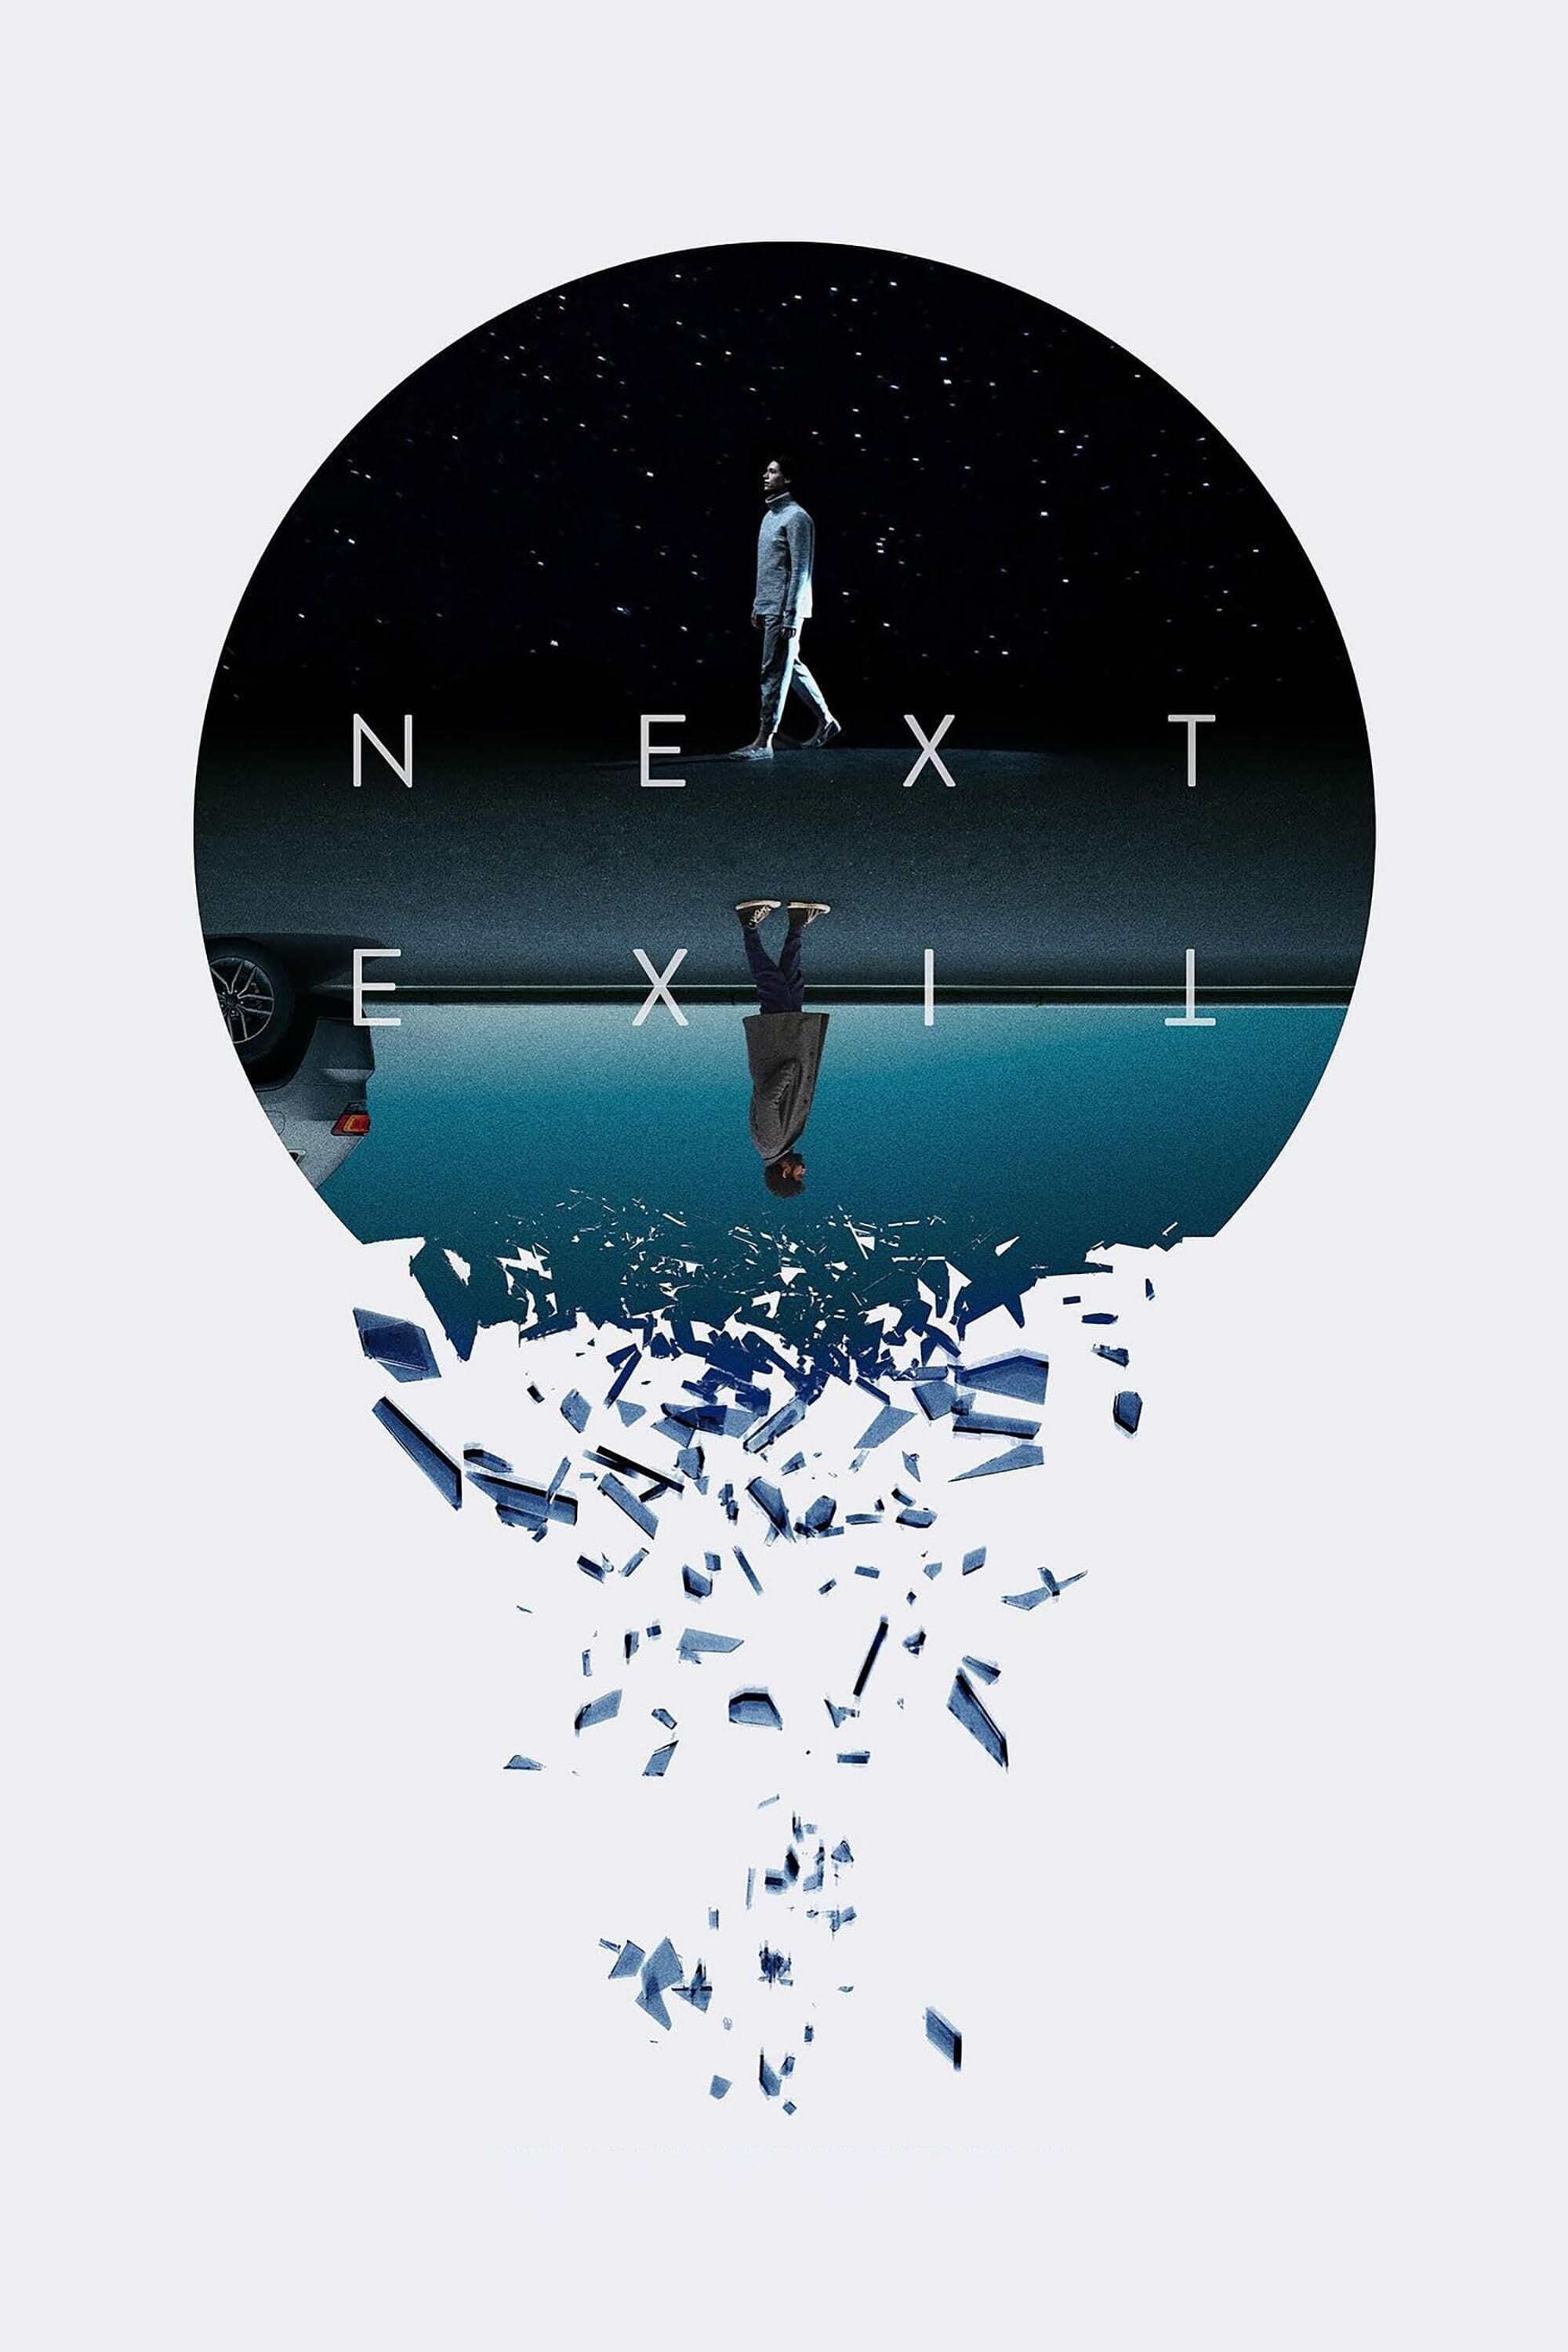 Next Exit 2022 1080p WEB-DL DD5 1 H 264-EVO